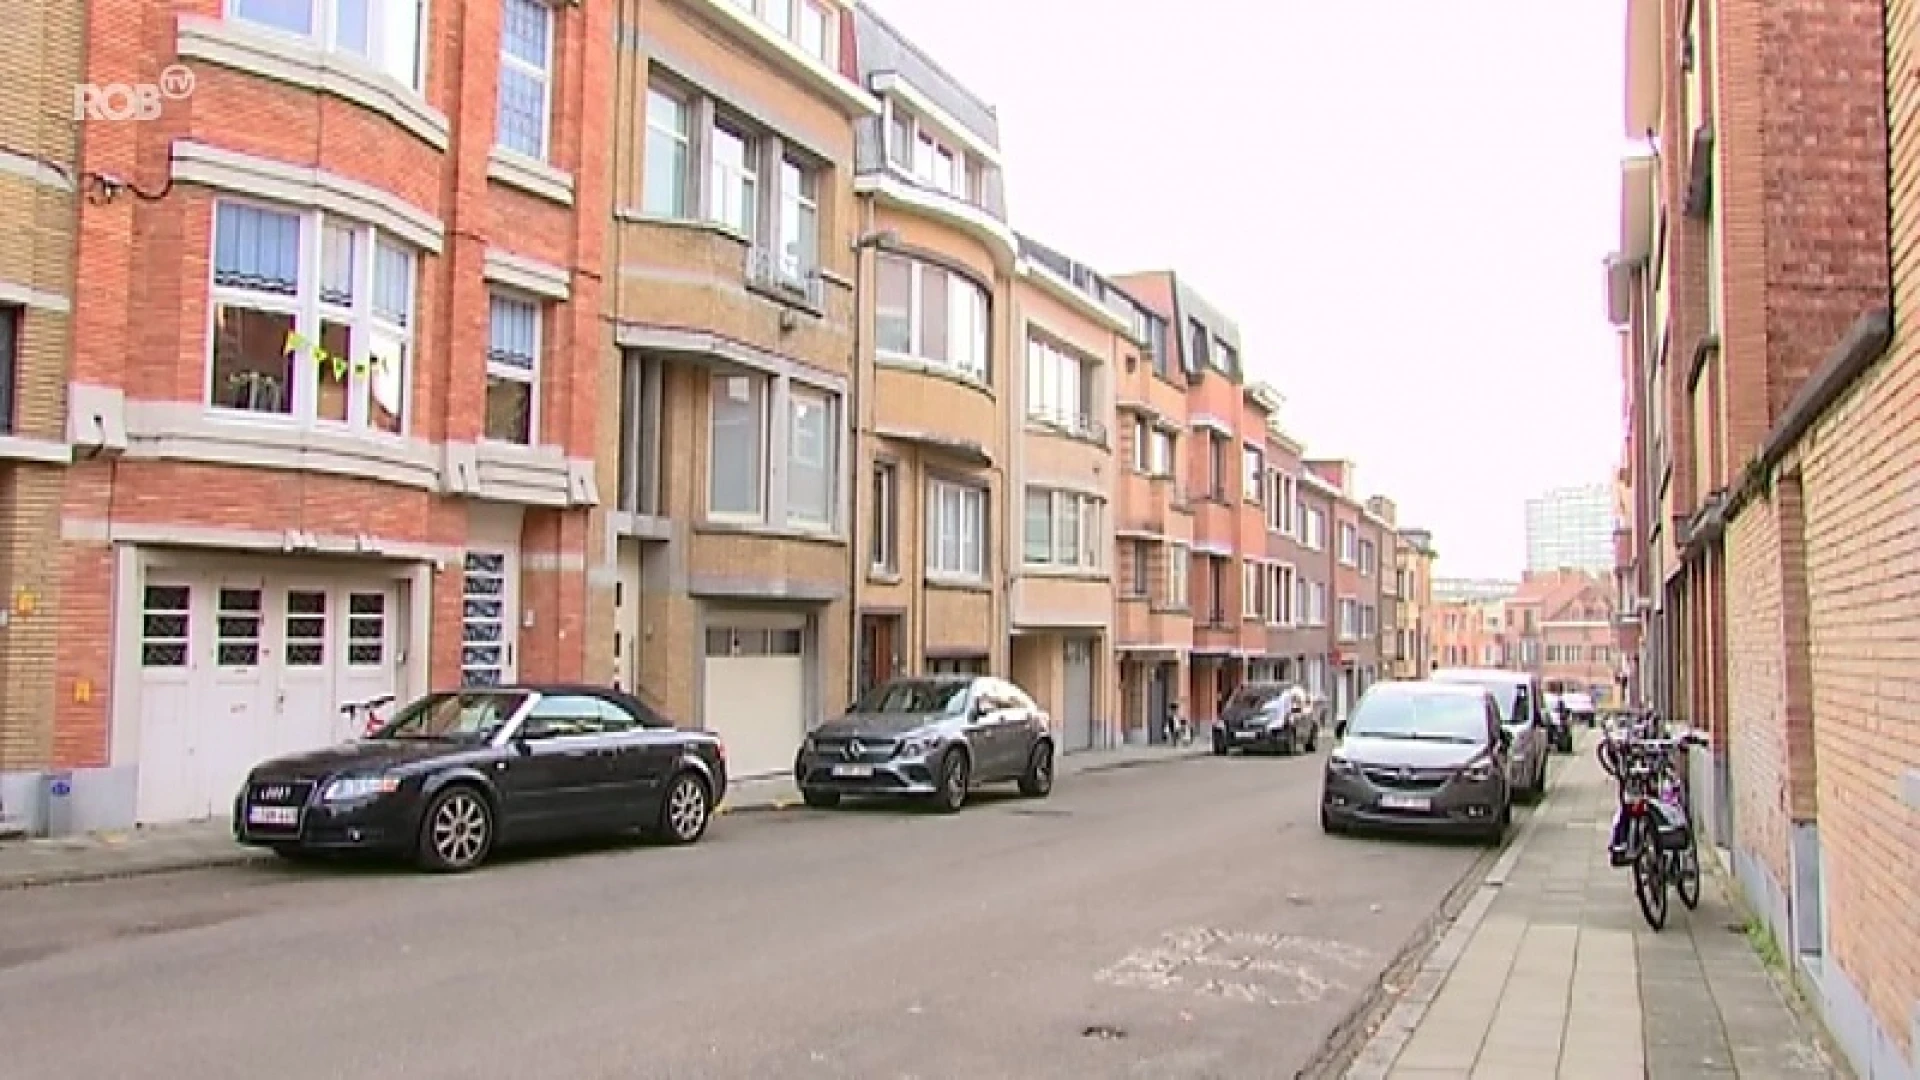 Meer en meer jonge gezinnen verhuizen uit Leuven volgens cijfers